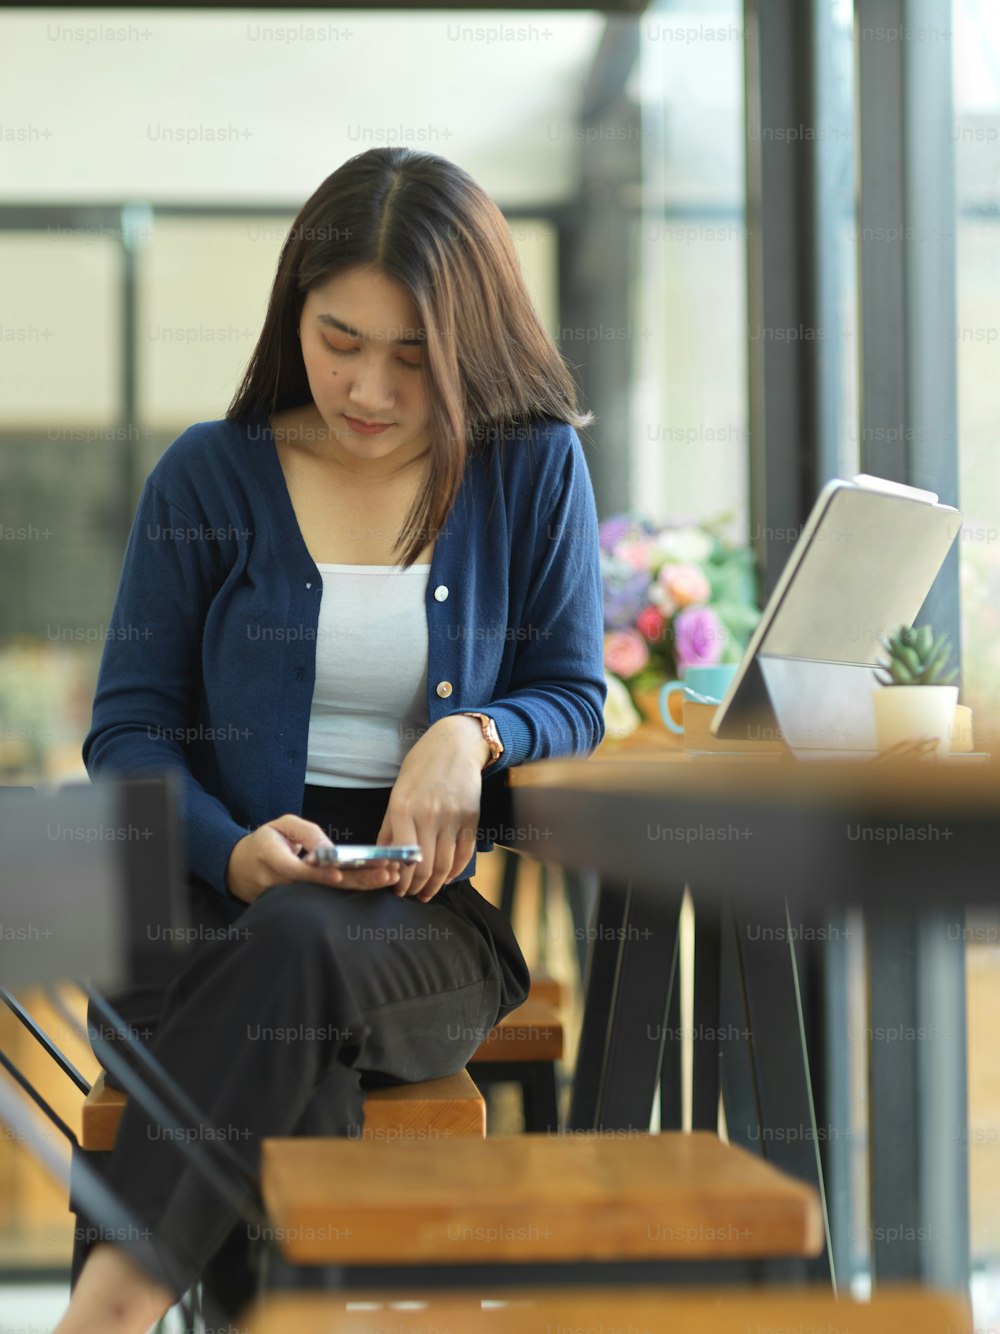 Retrato do estudante universitário feminino que usa o smartphone enquanto está sentado no bar de madeira no café